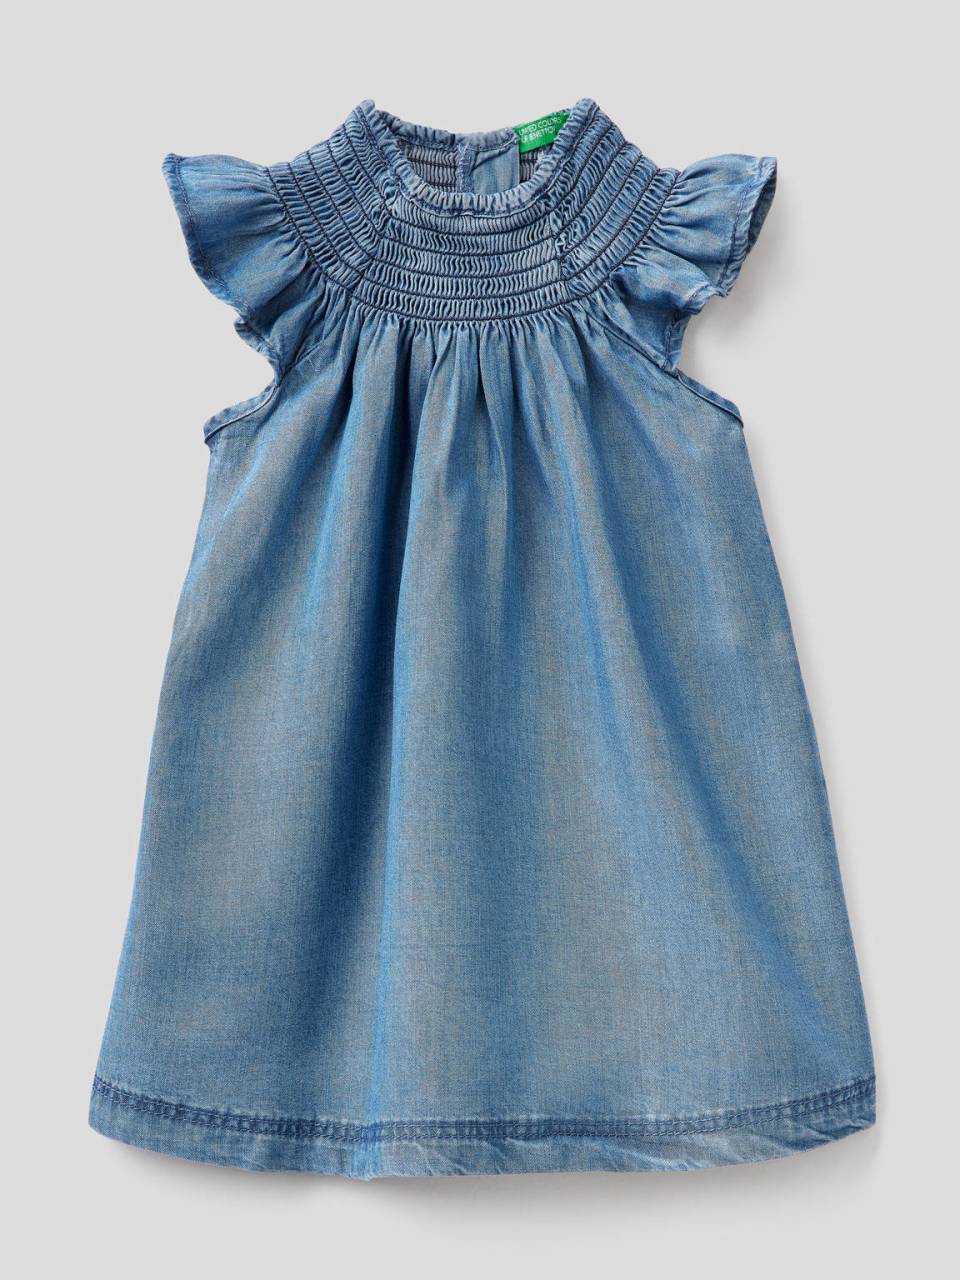 Benetton Dress in chambray fabric - 4DA75VFD0_901